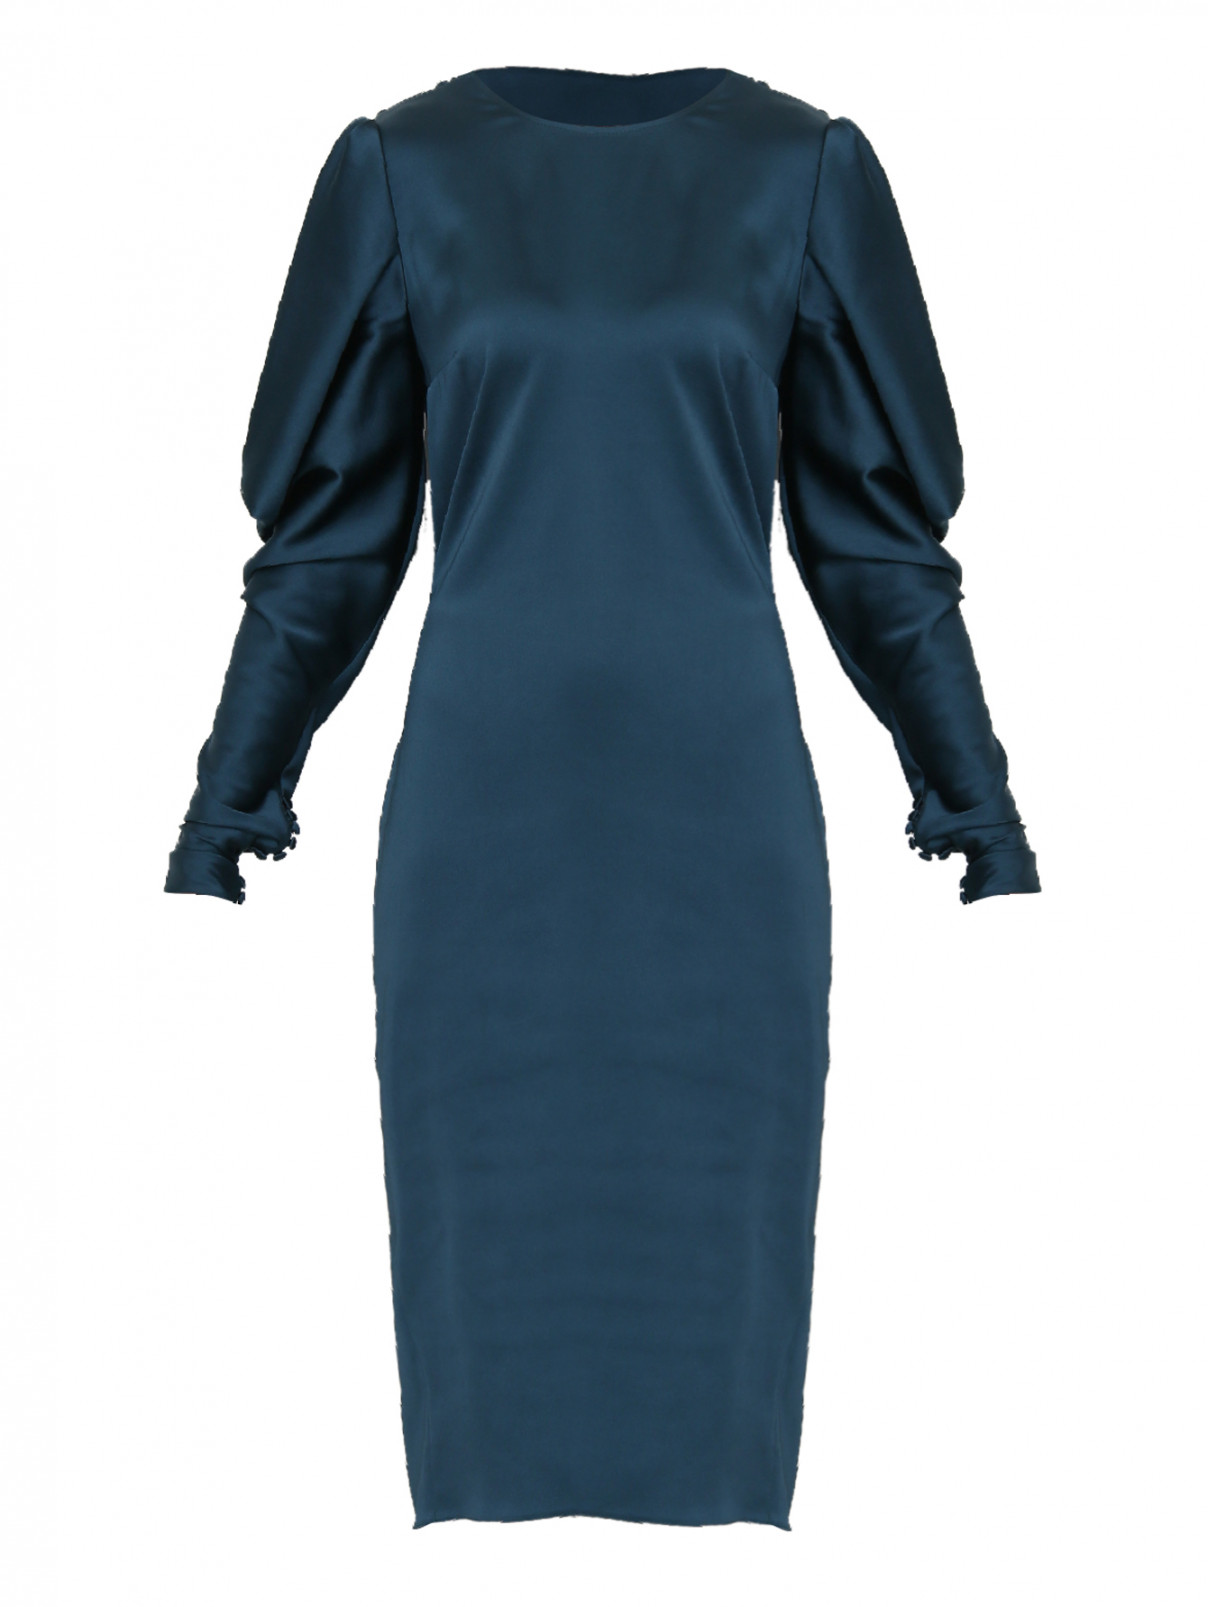 платье-миди с декоративными складками на спинке Rhea Costa  –  Общий вид  – Цвет:  Синий